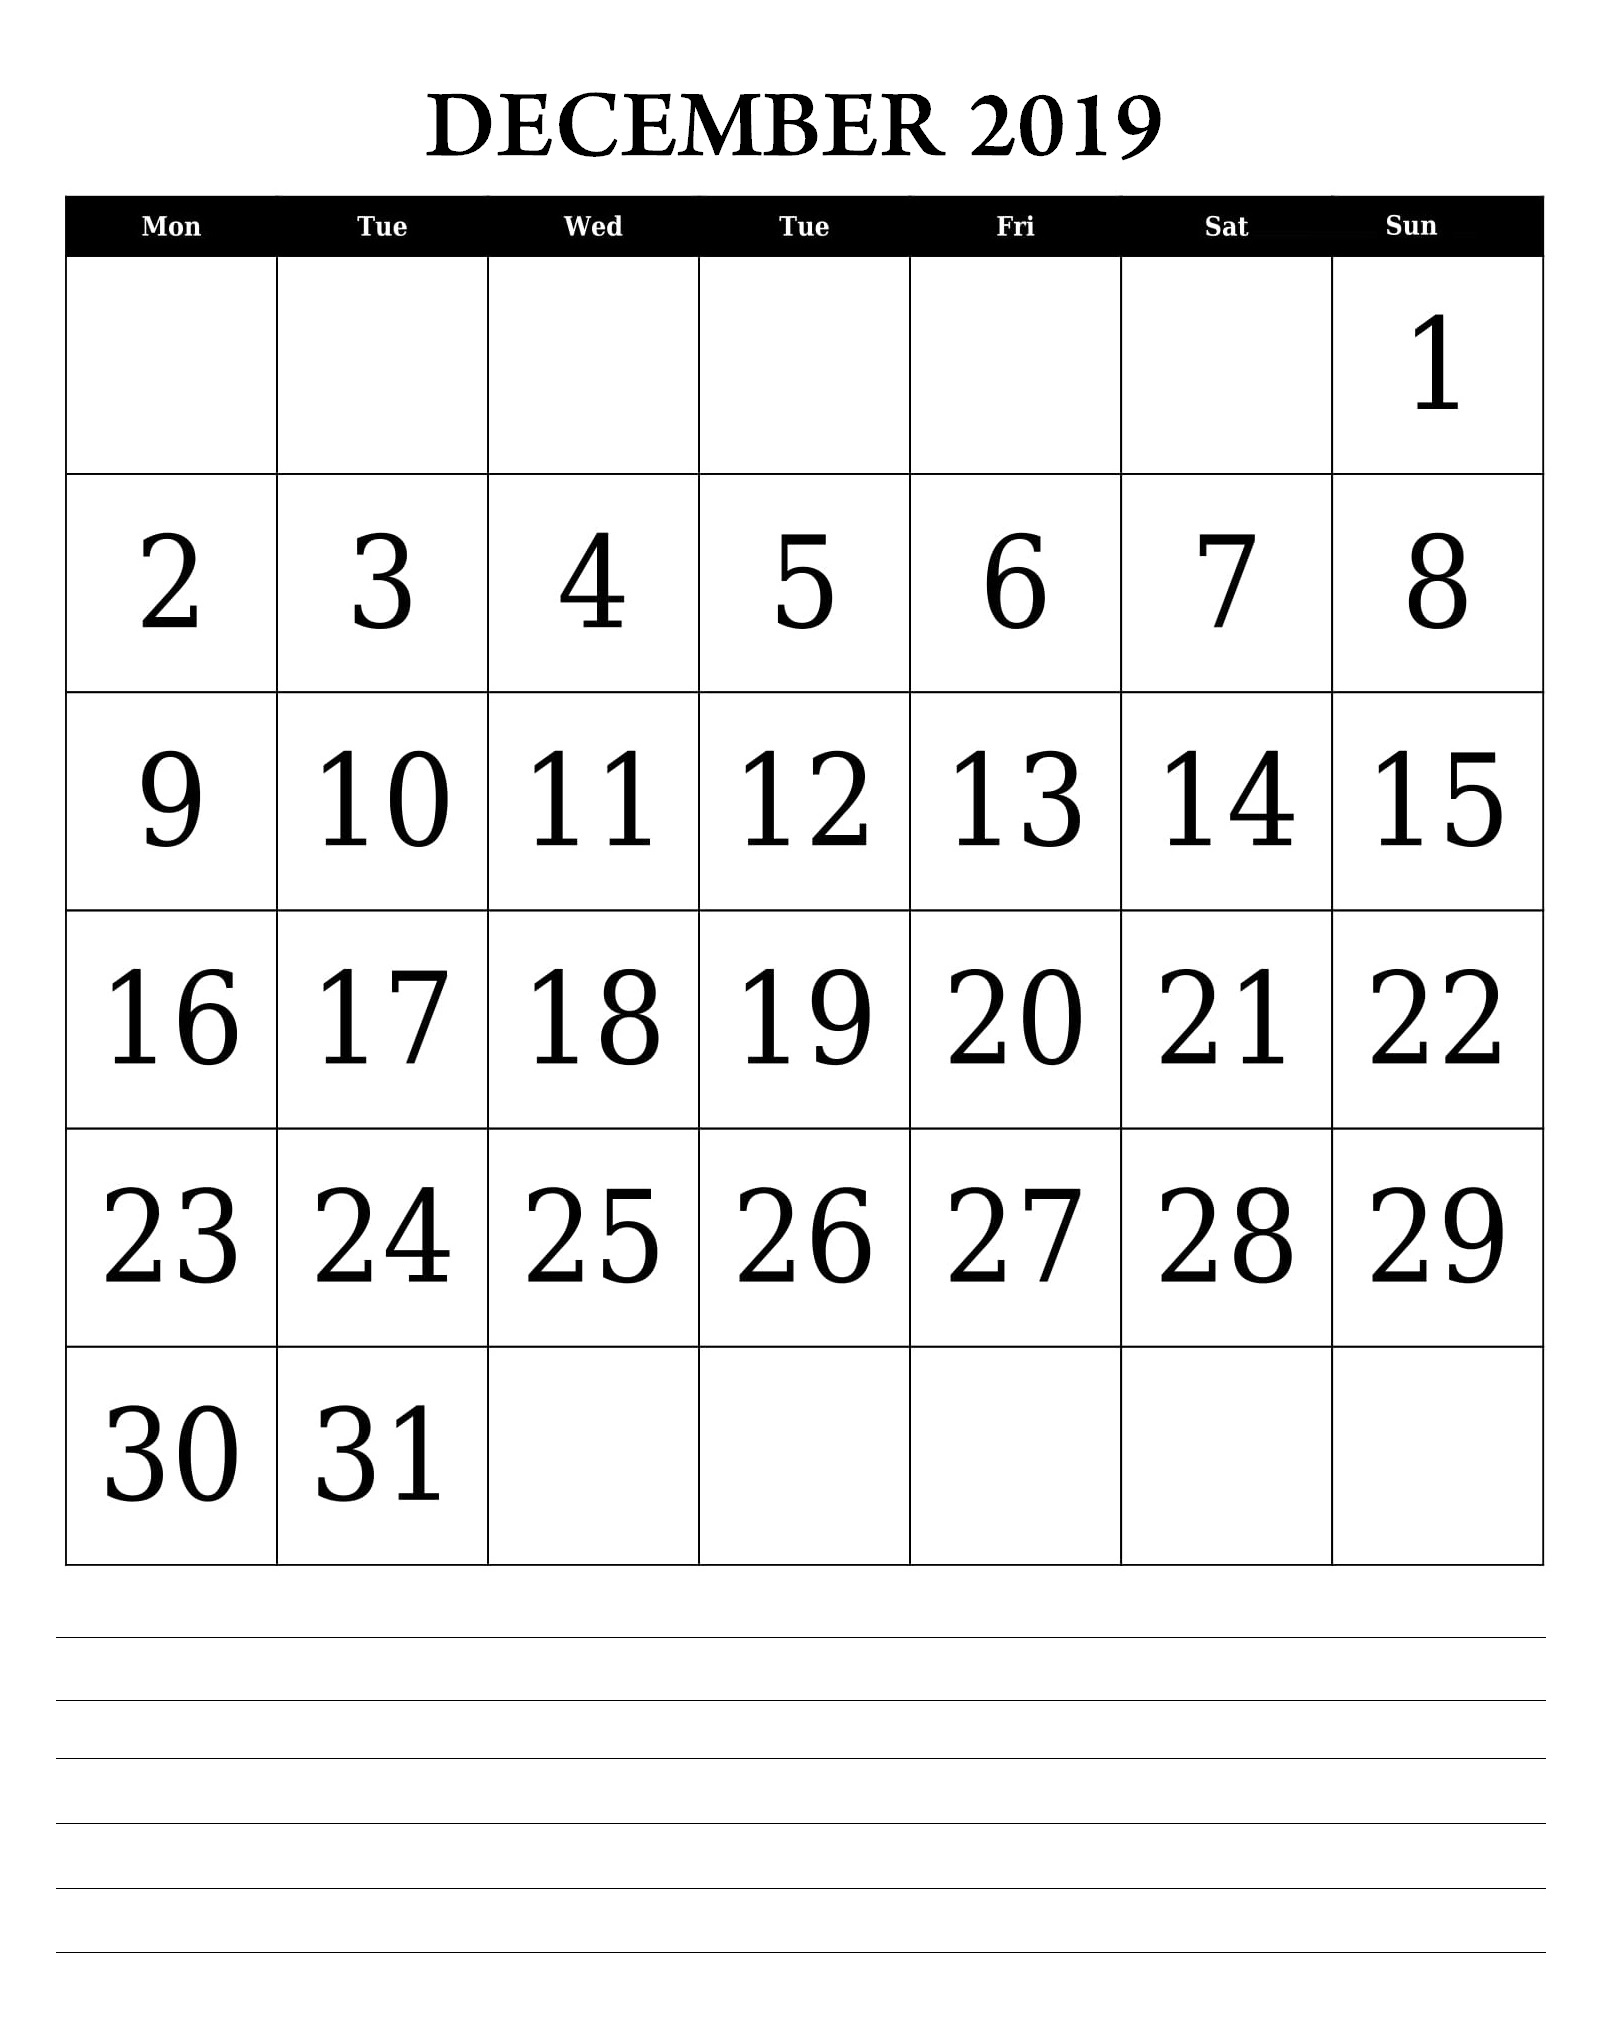 December 2019 Wall Calendar Template